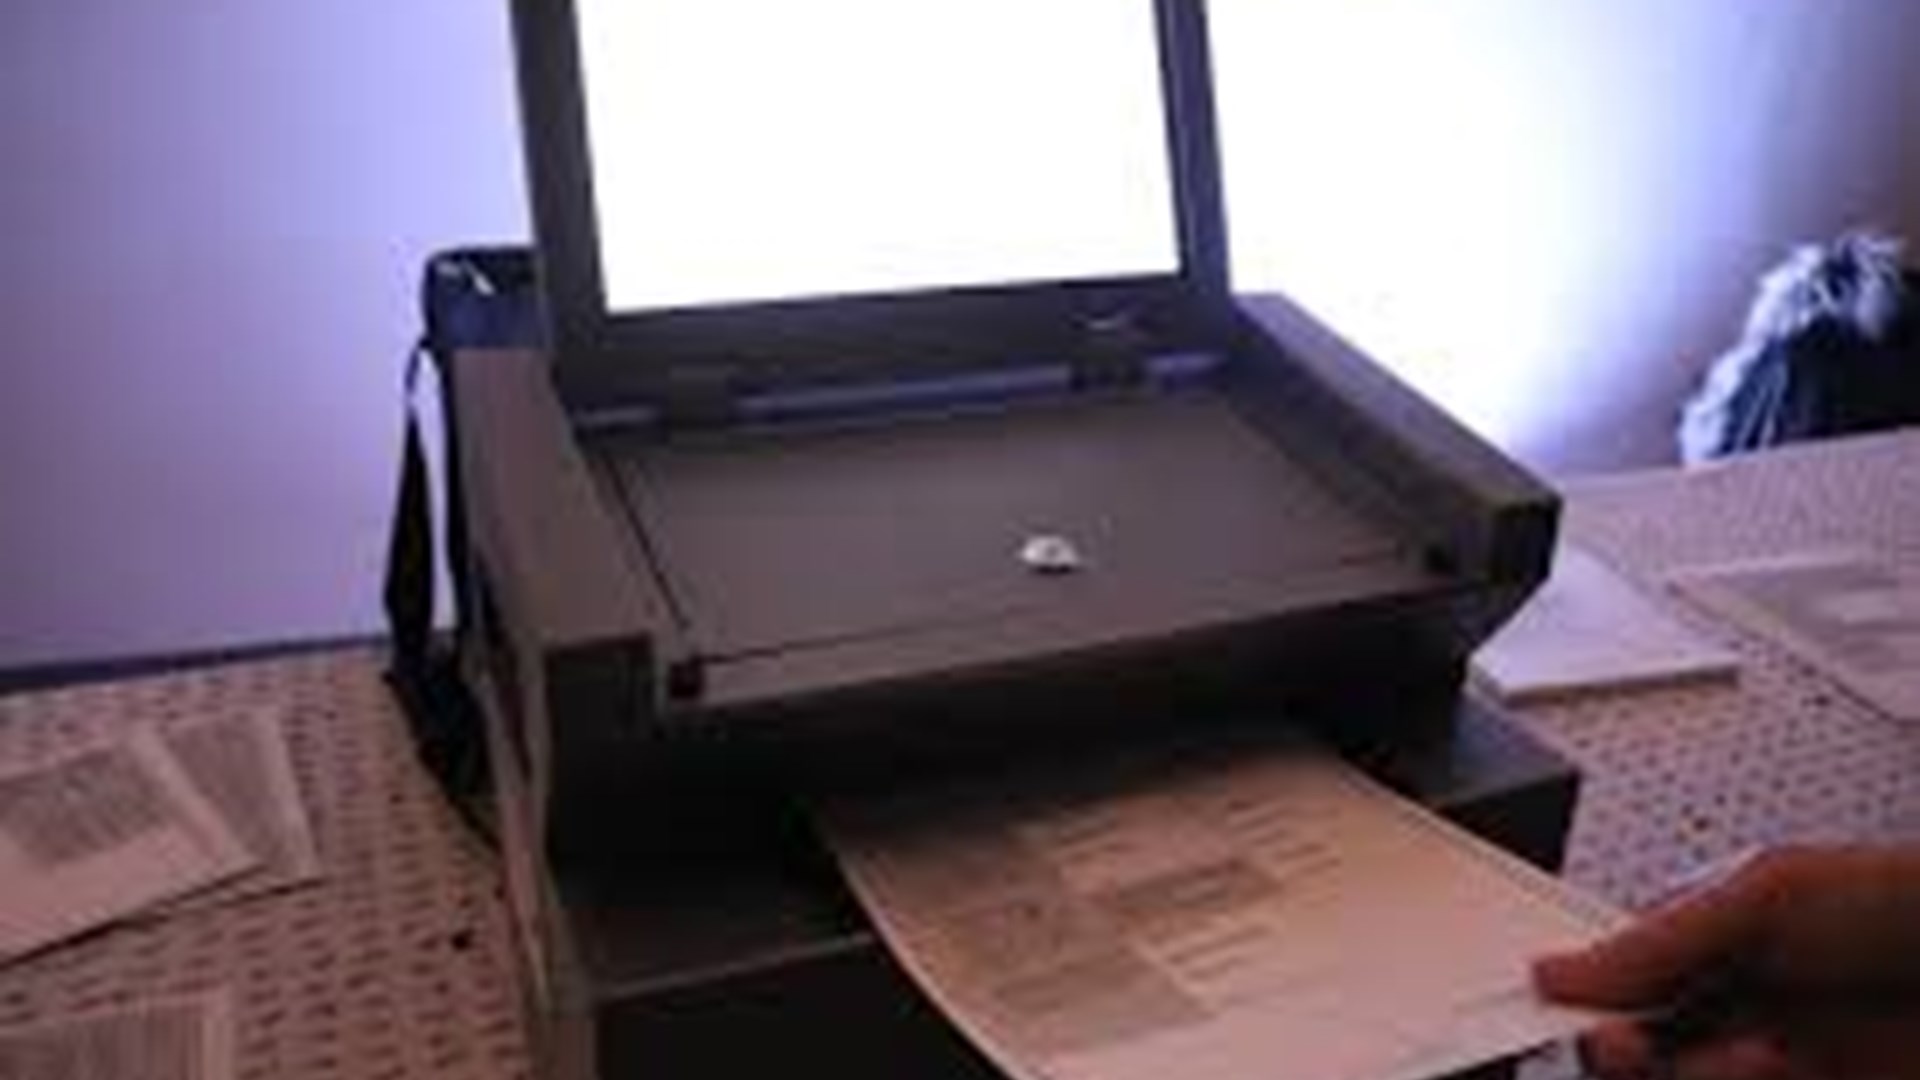 BC Voting Machine